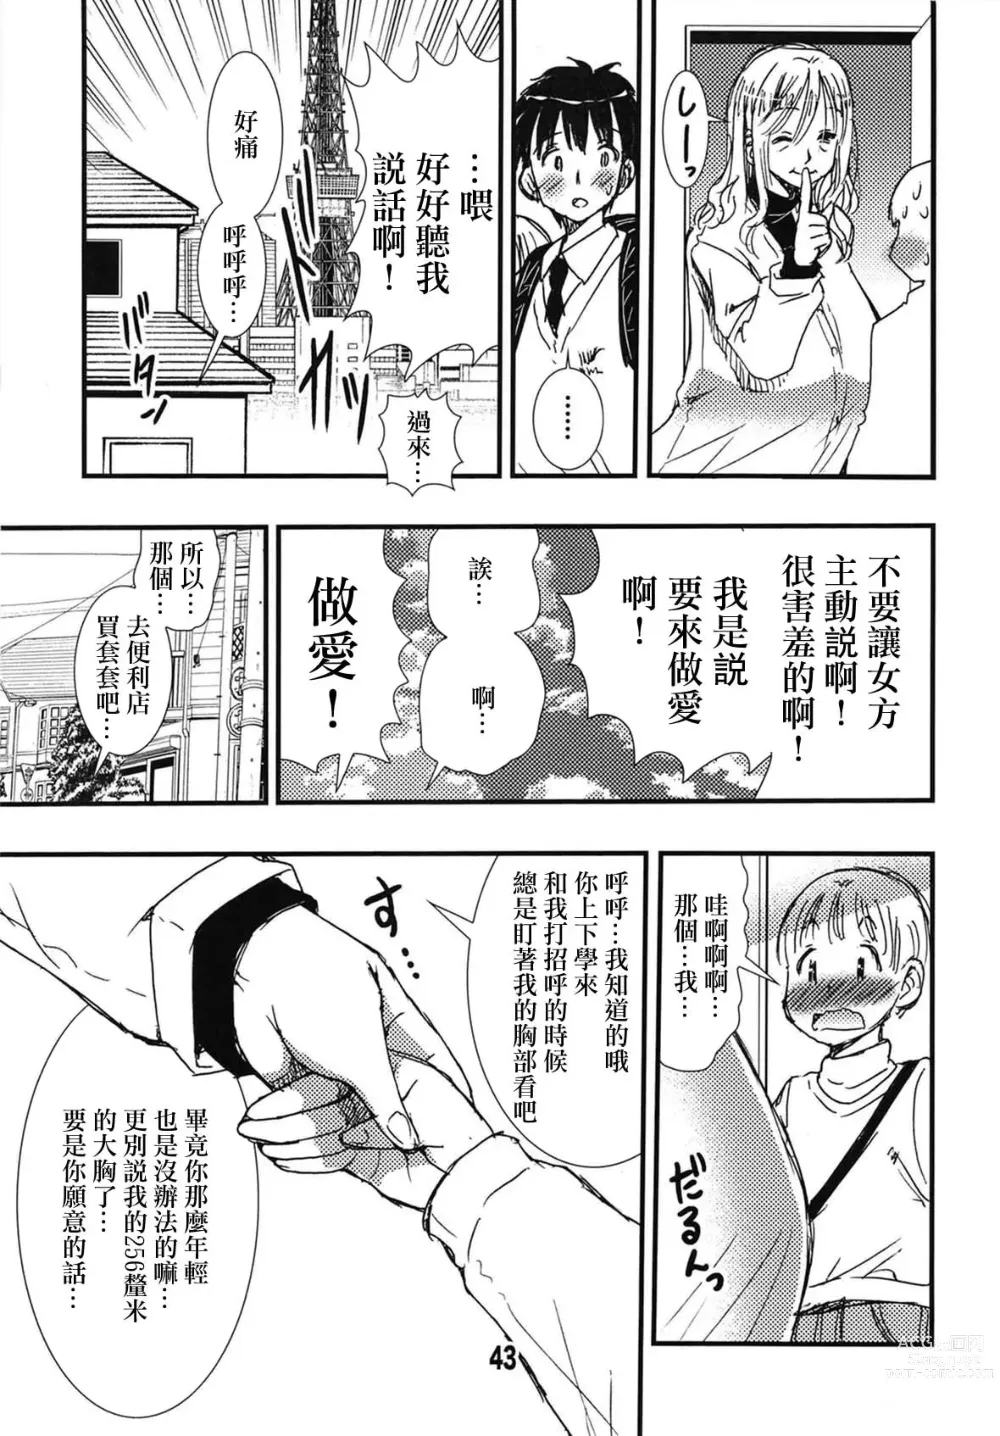 Page 40 of doujinshi 56-sai Bust 256cm Danchizuma Ookiku Tareta Jukujo no Chibusa... Boku wa Kono Hito de Doutei o Sotsugyou Shita.